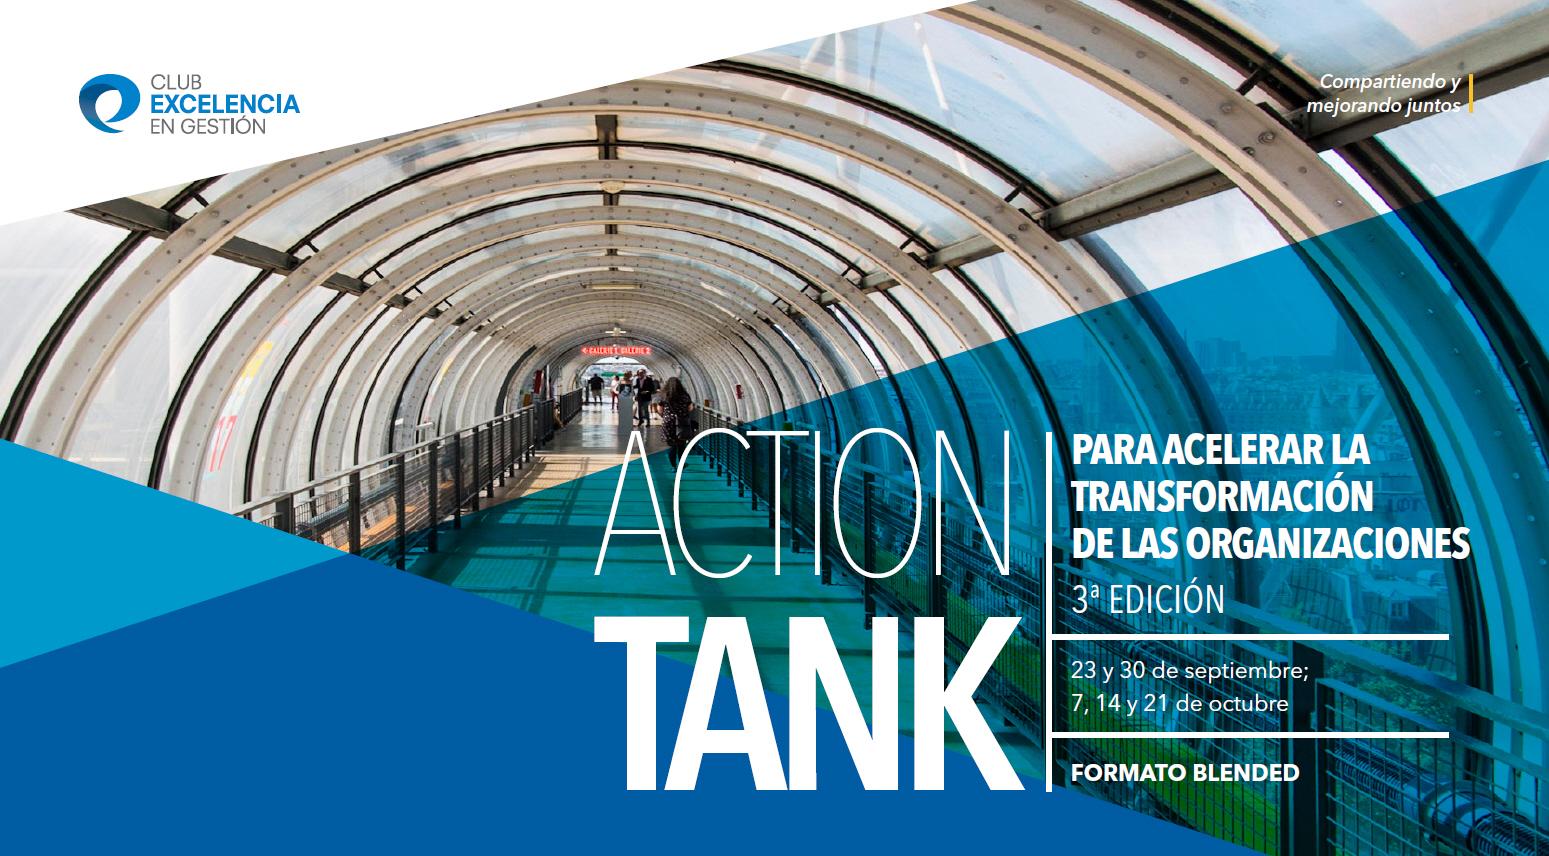 Action Tank Transformacion - 3ª edición